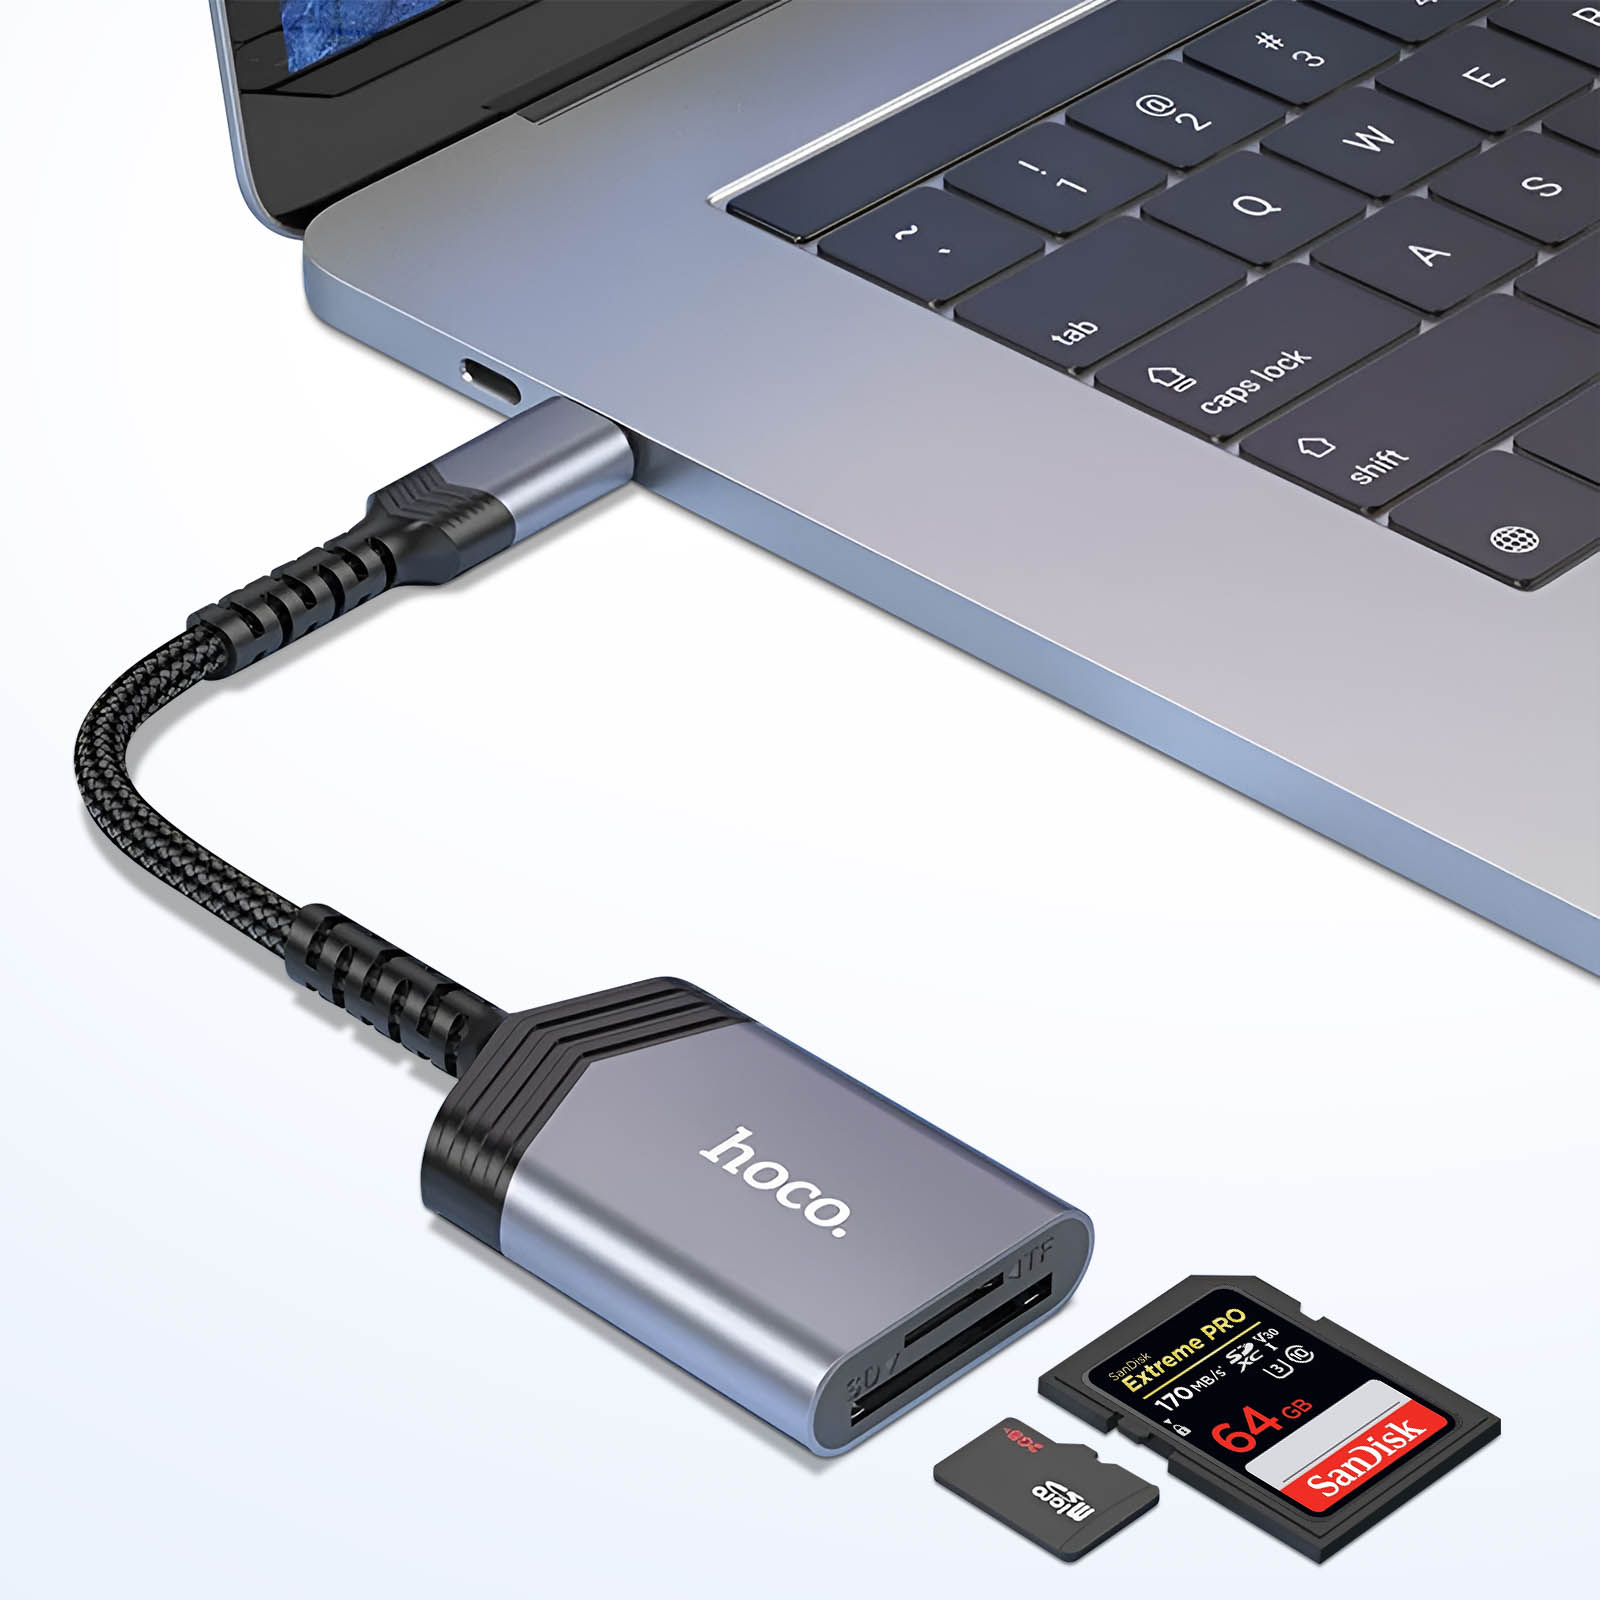 SANDISK LECTEUR CARTES SD EXTREME PRO USB-C